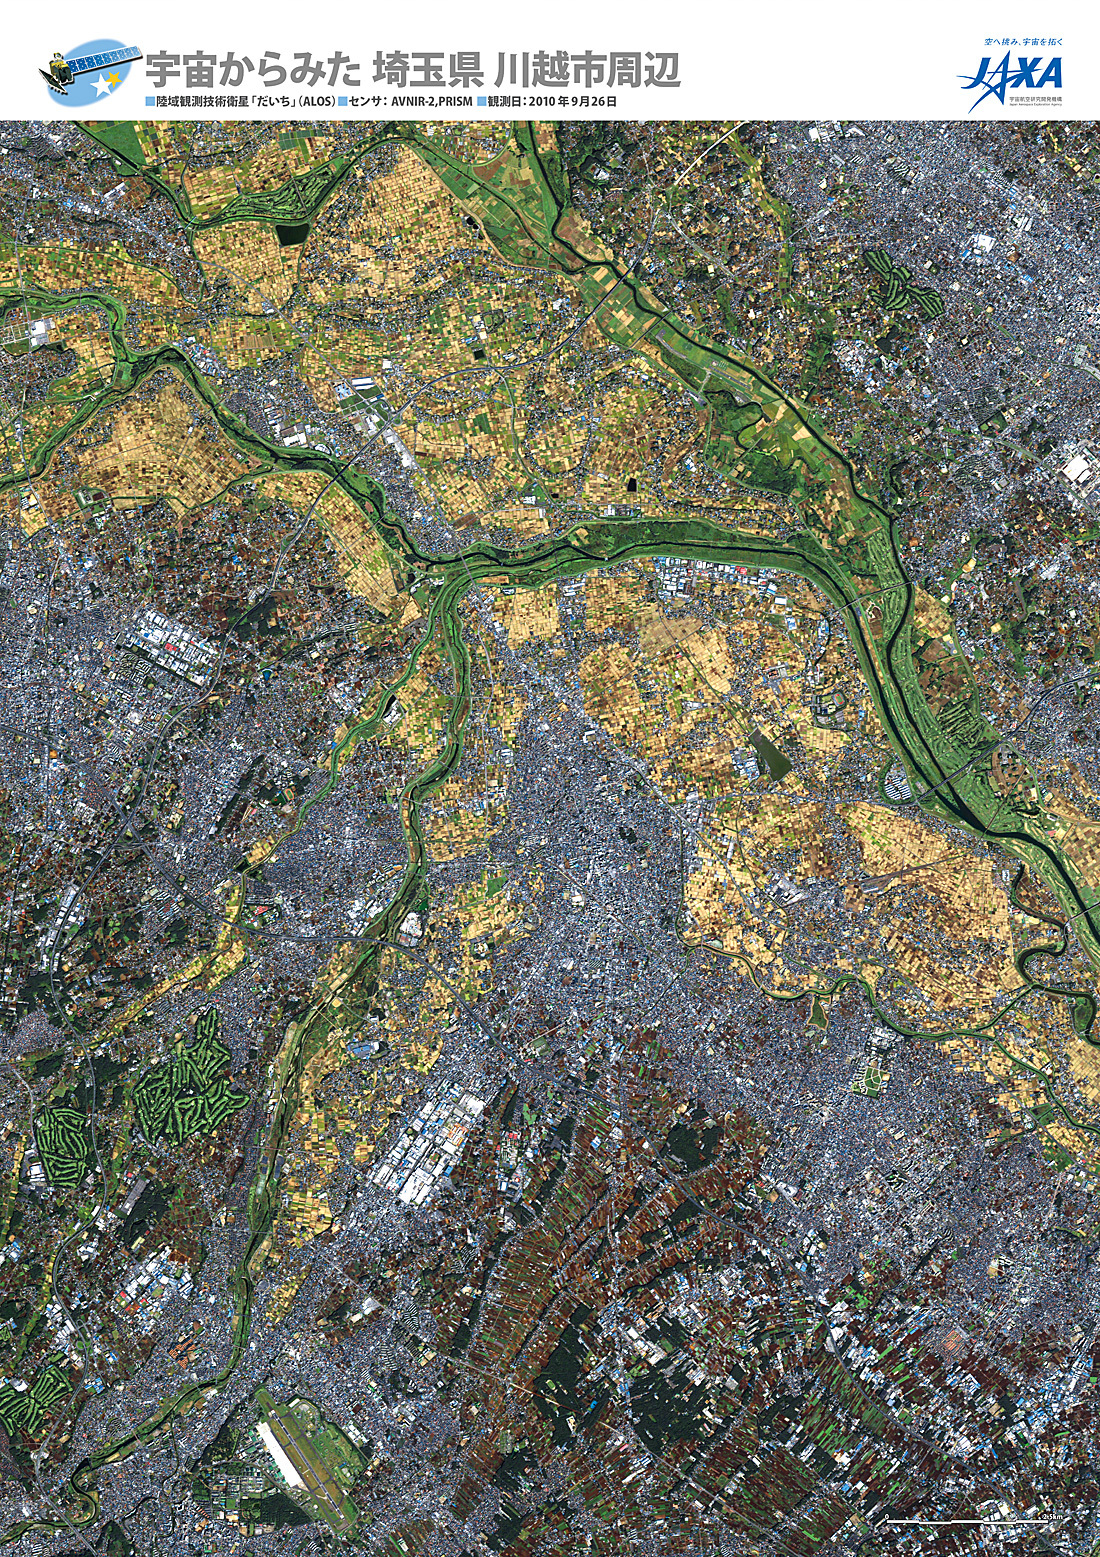 だいちから見た日本の都市 川越市周辺:衛星画像（ポスター仕上げ）